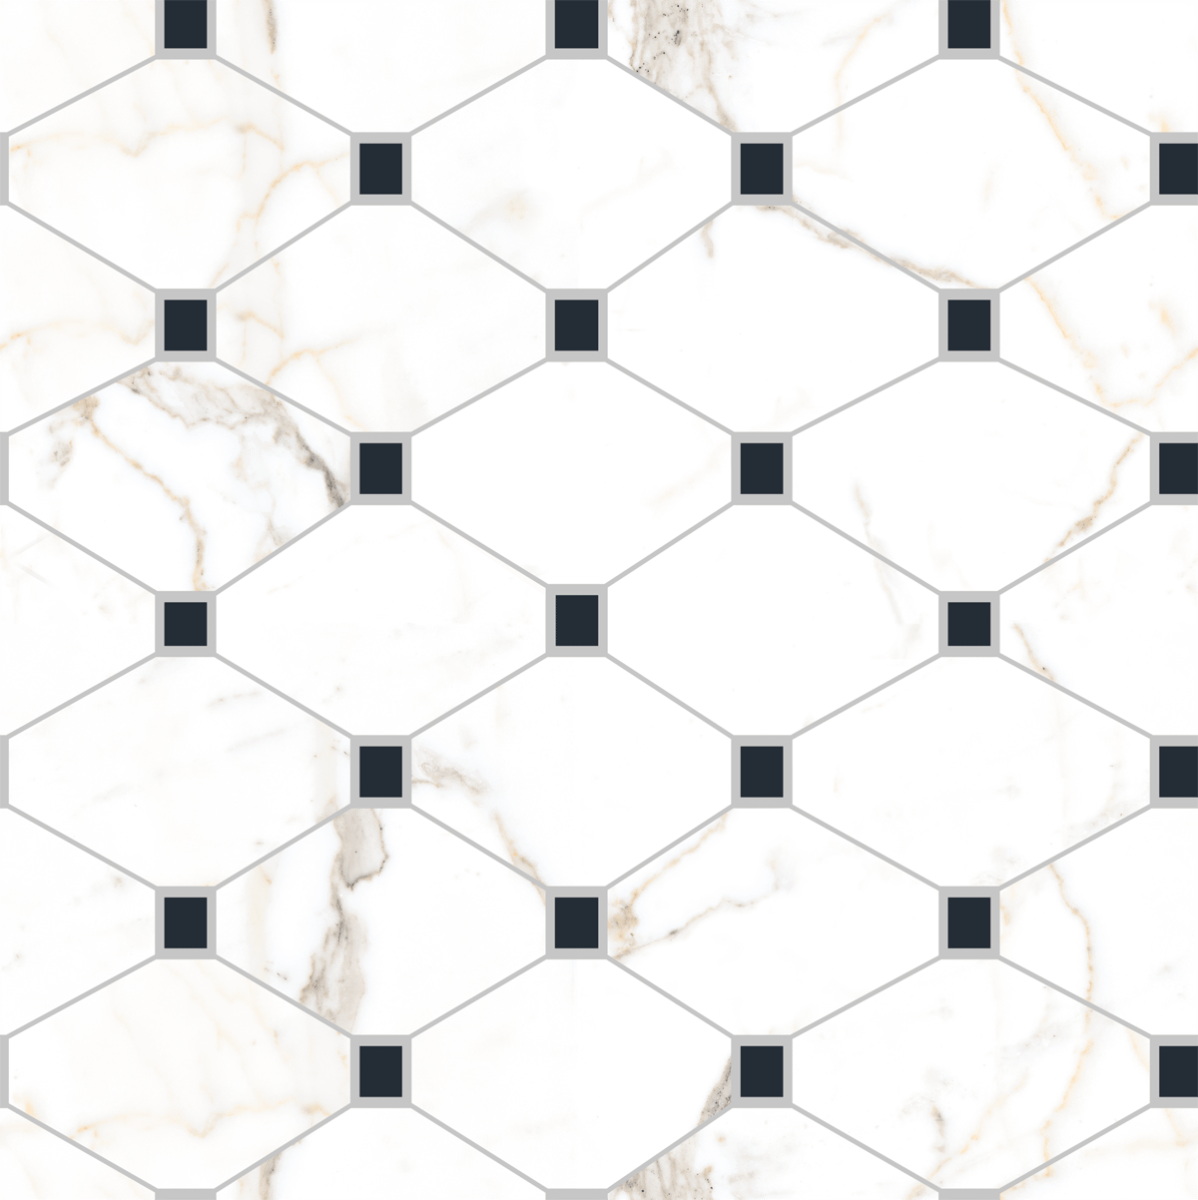 White Tiles for Living Room Tiles, Kitchen Tiles, Bedroom Tiles, Accent Tiles, Office Tiles, Bar Tiles, Restaurant Tiles, Hospital Tiles, Bar/Restaurant, Commercial/Office